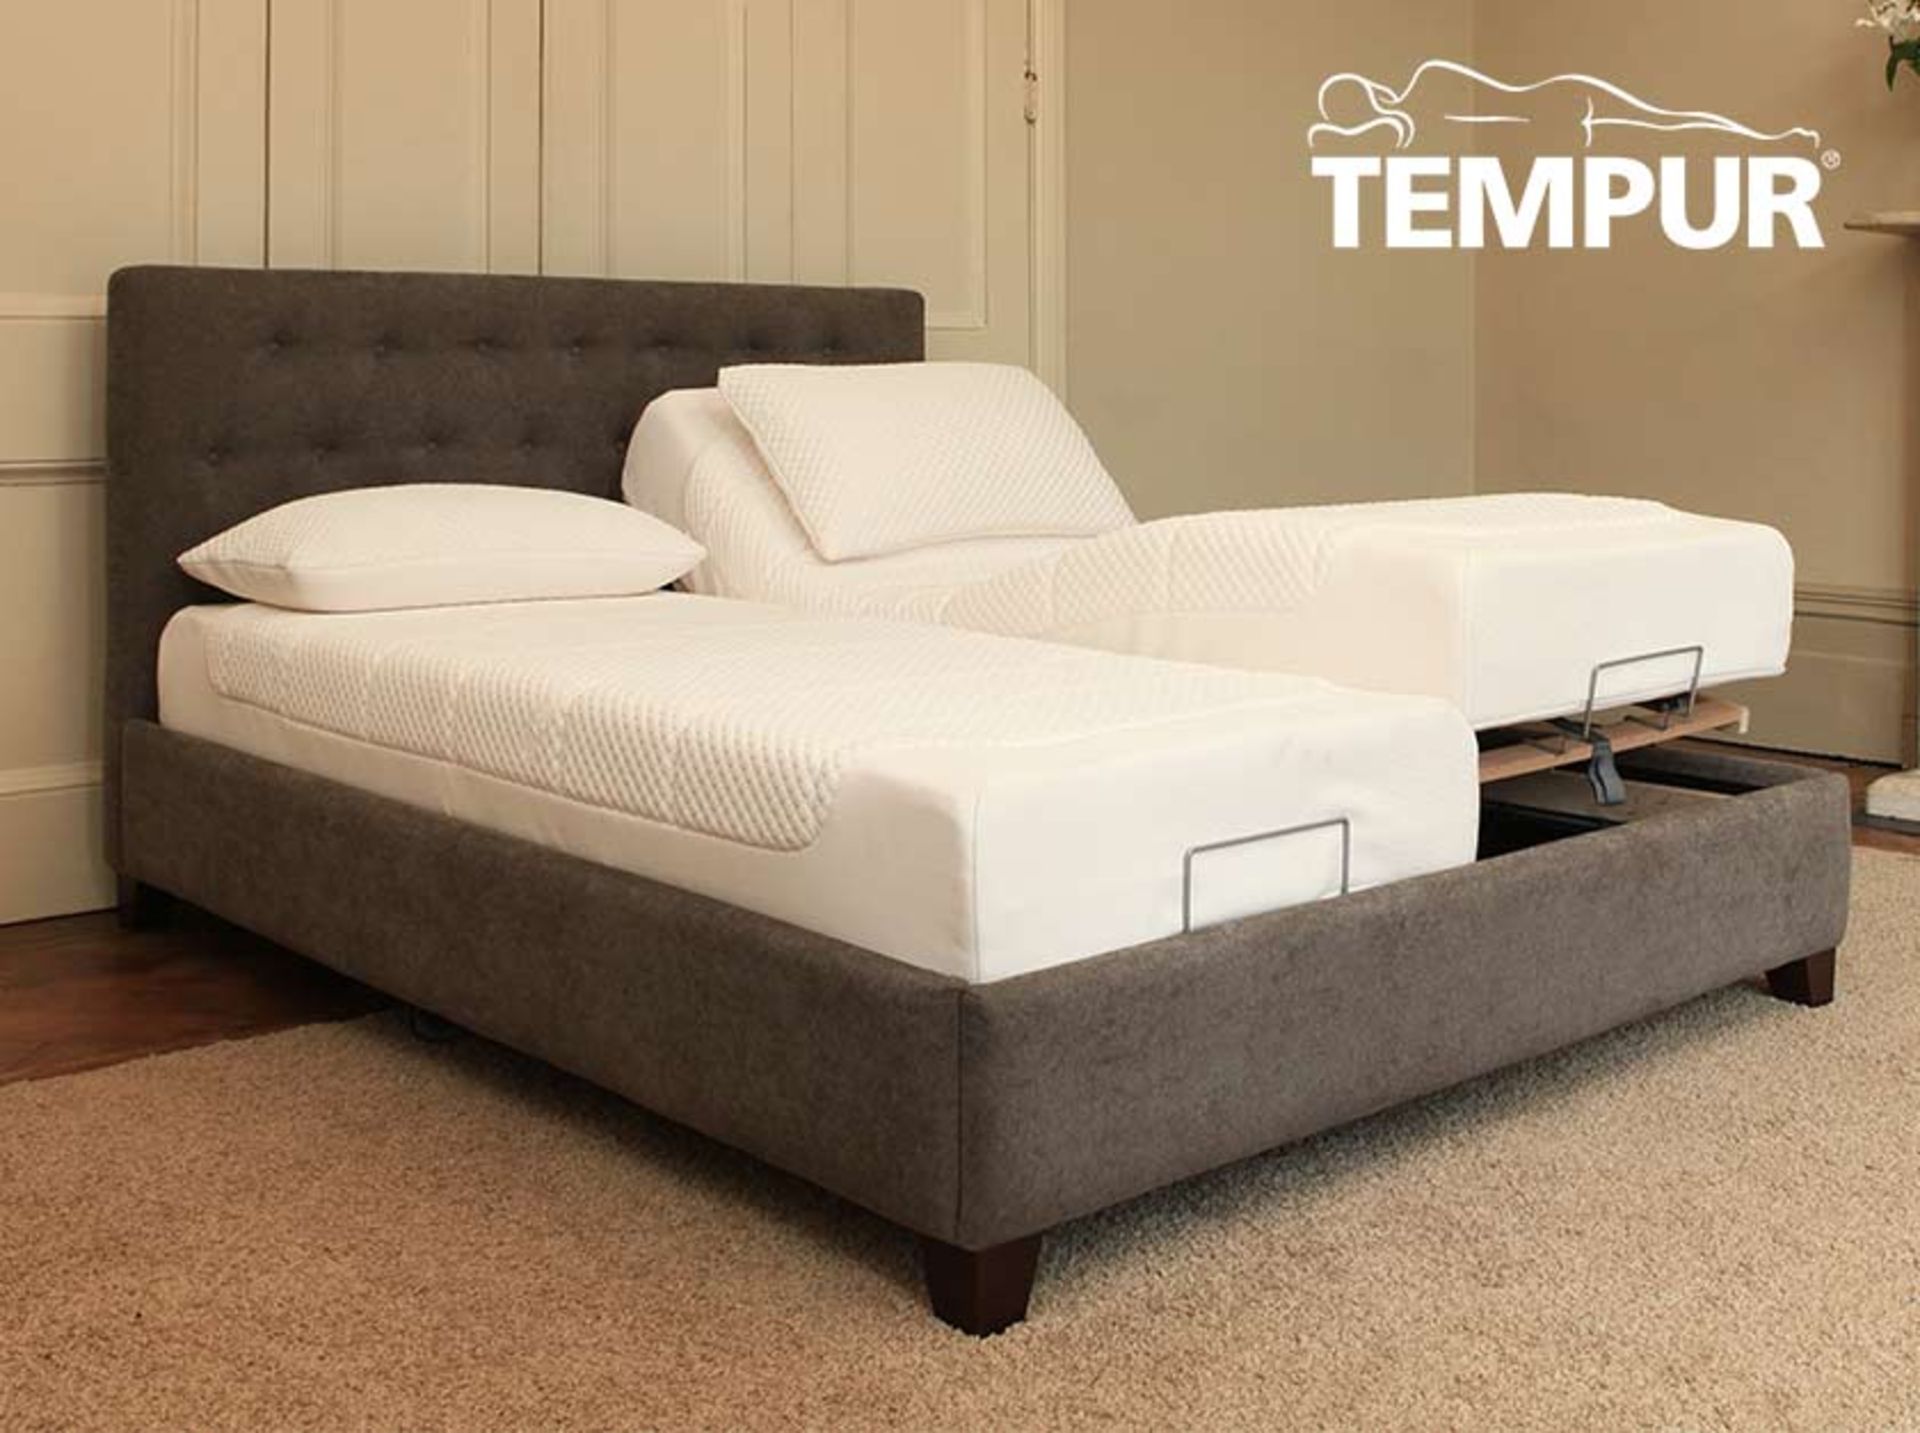 1 x TEMPUR® Foxton Adjustable Massage Bedstead - Colour: Mink - Ref: 3630120 - CL087 - Kingsize: